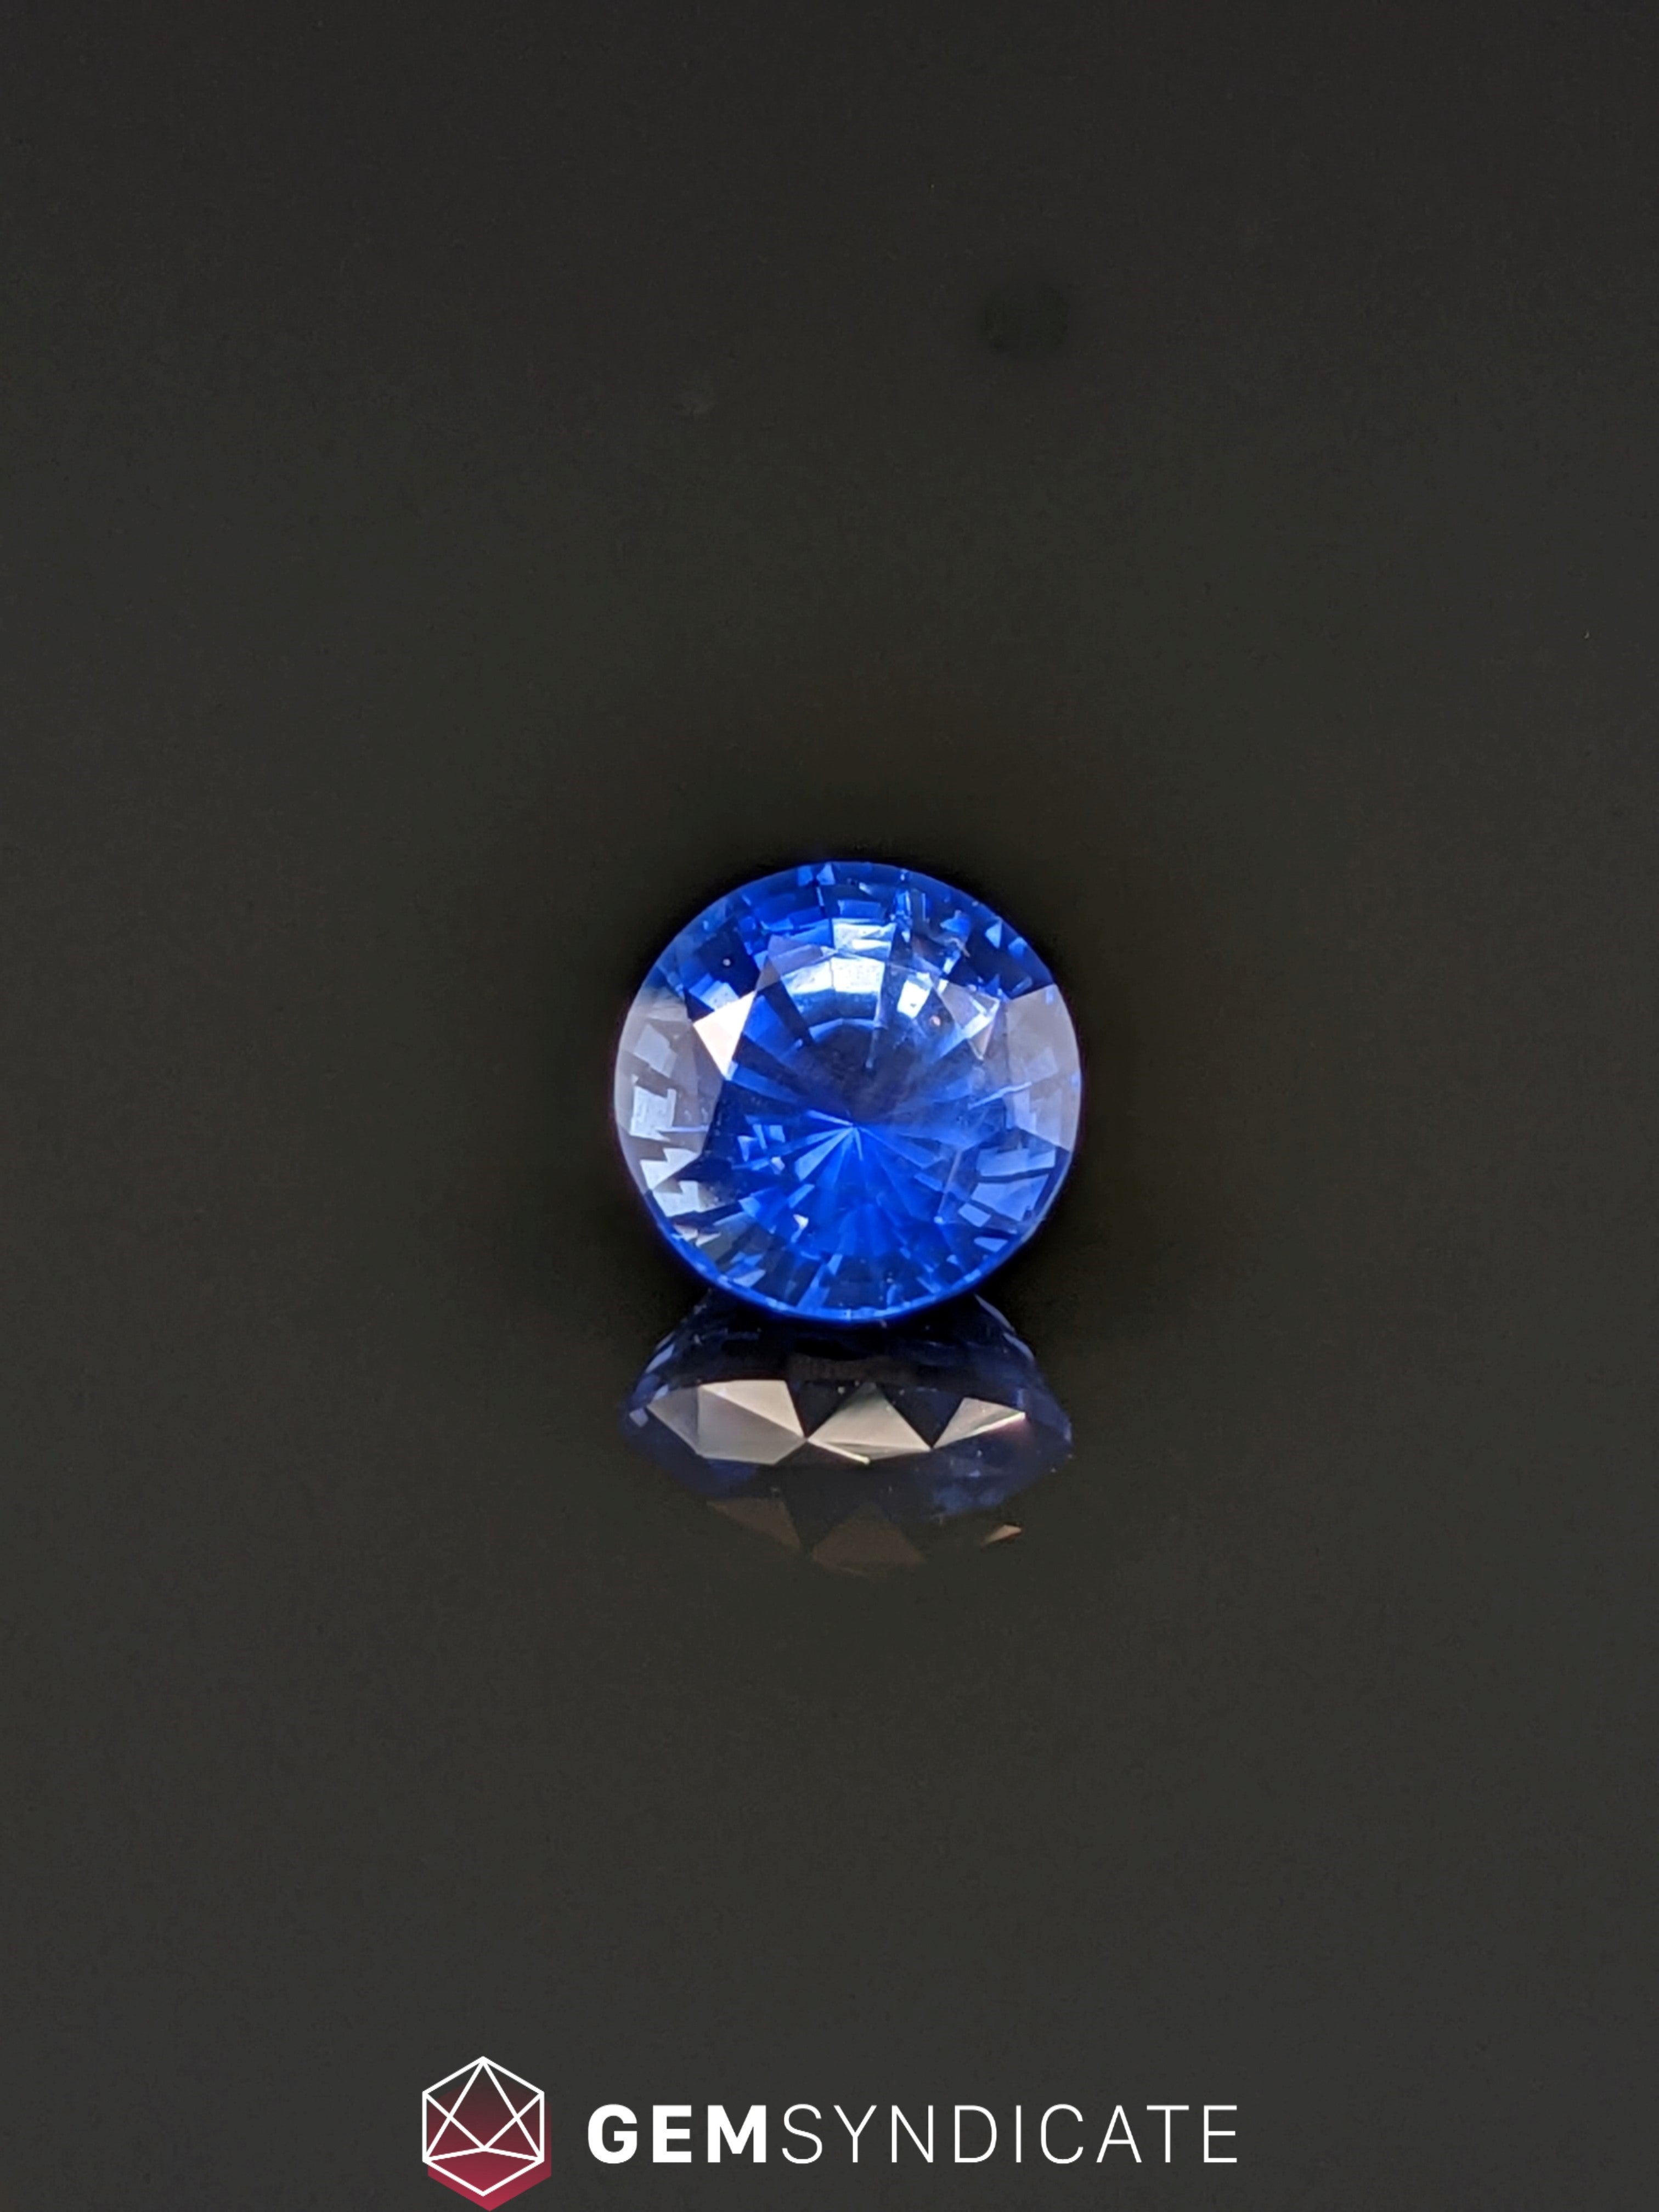 Regal Round Blue Sapphire 1.15ct